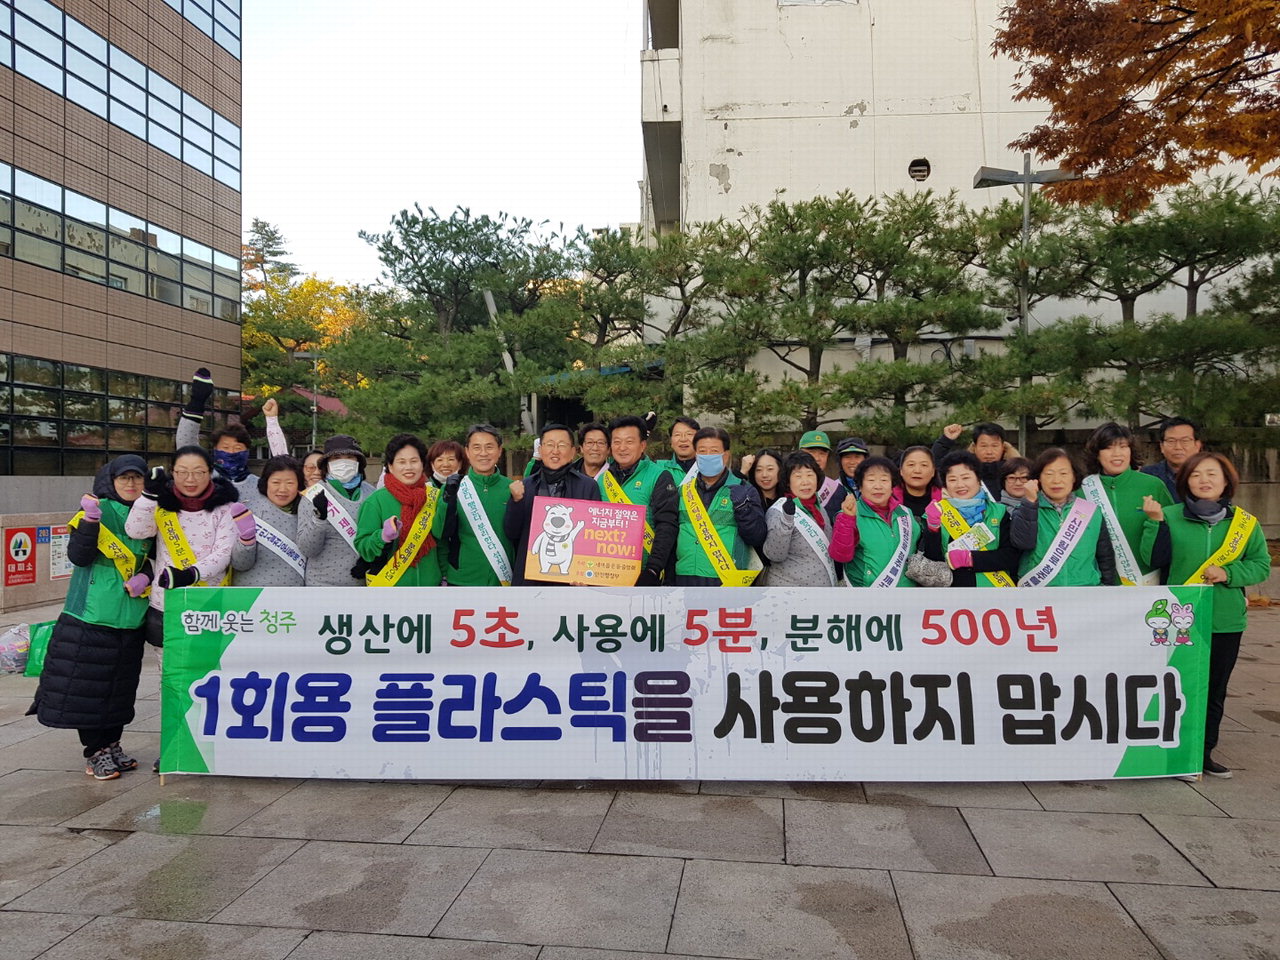 청주시새마을회(회장 박연규) 회원 900여명은 19일 43개 읍·면·동에서 쓰레기 제로화 및 재활용 캠페인을 전개했다.